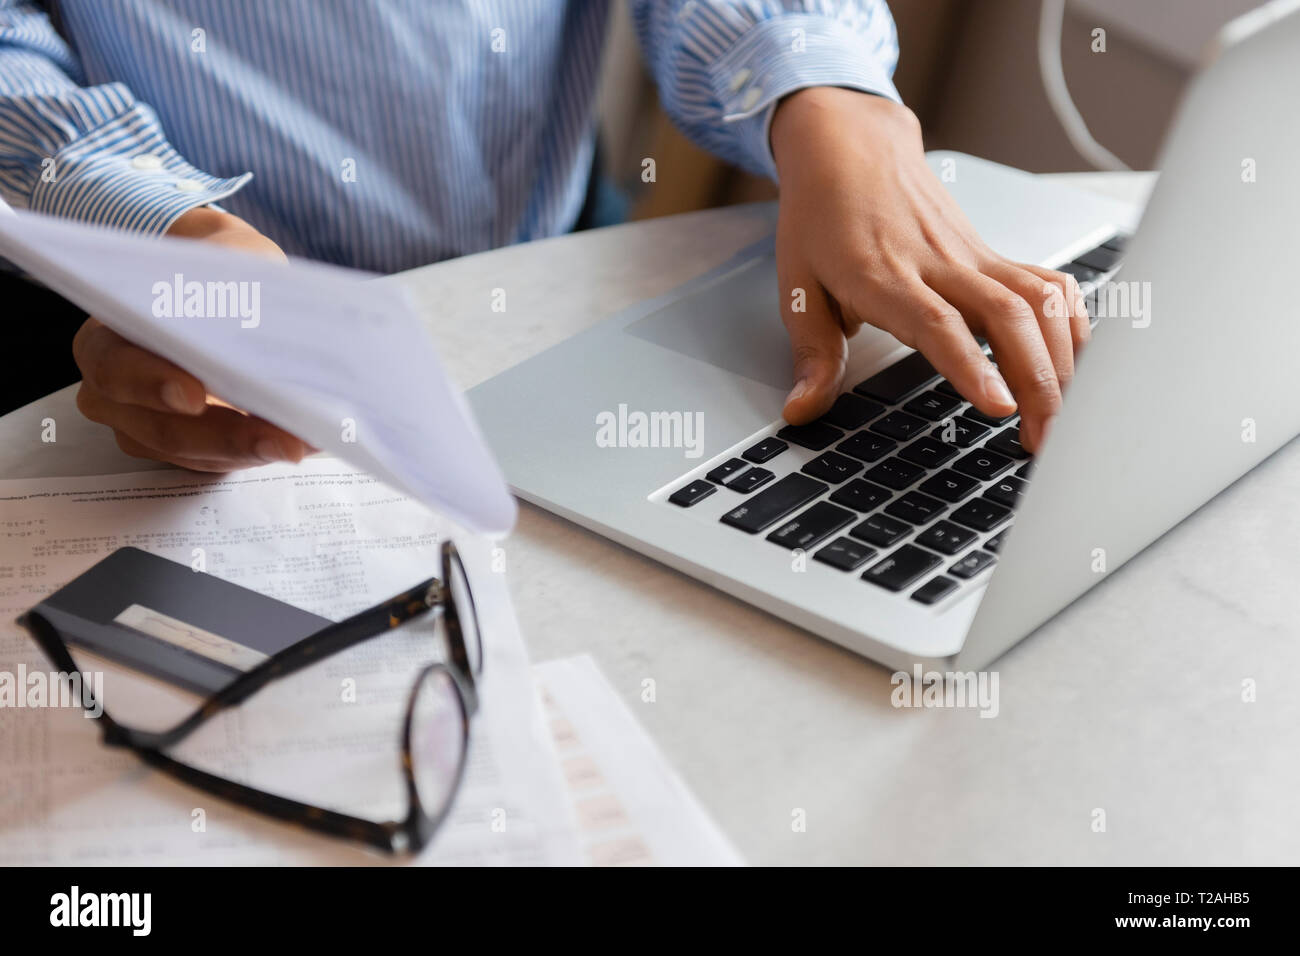 Mains de woman typing on laptop Banque D'Images